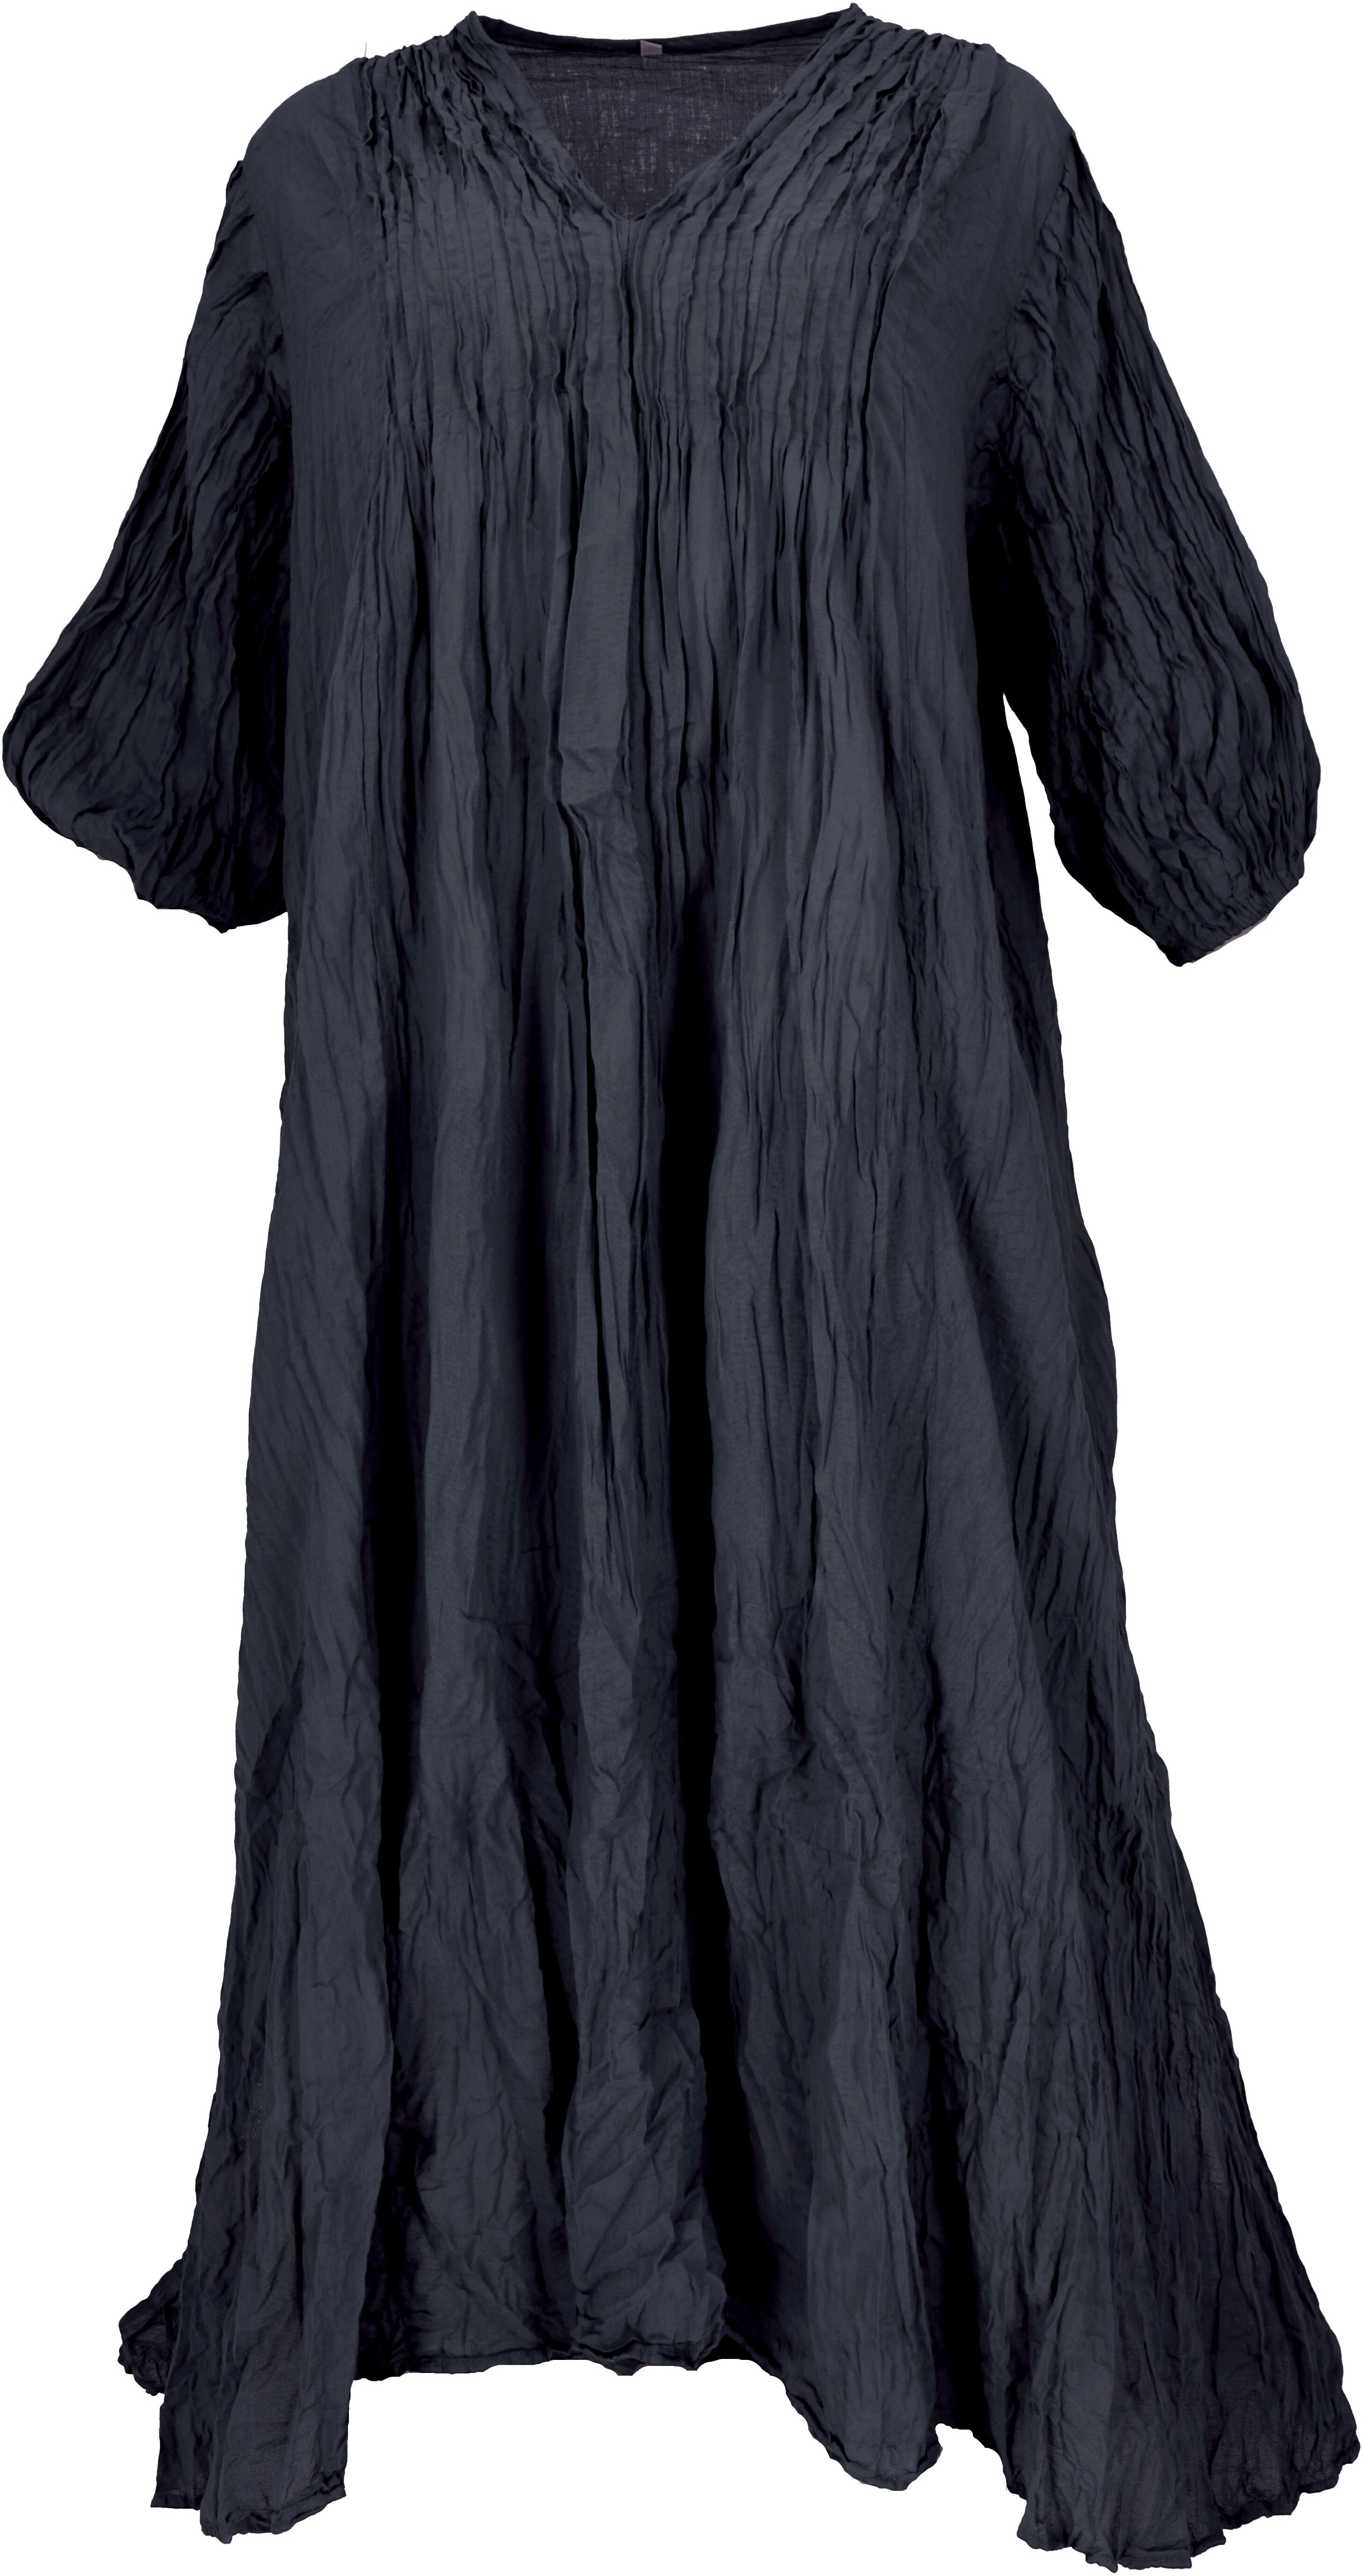 Bekleidung Midikleid alternative schwarz für.. Guru-Shop langes luftiges Sommerkleid Maxikleid, Boho